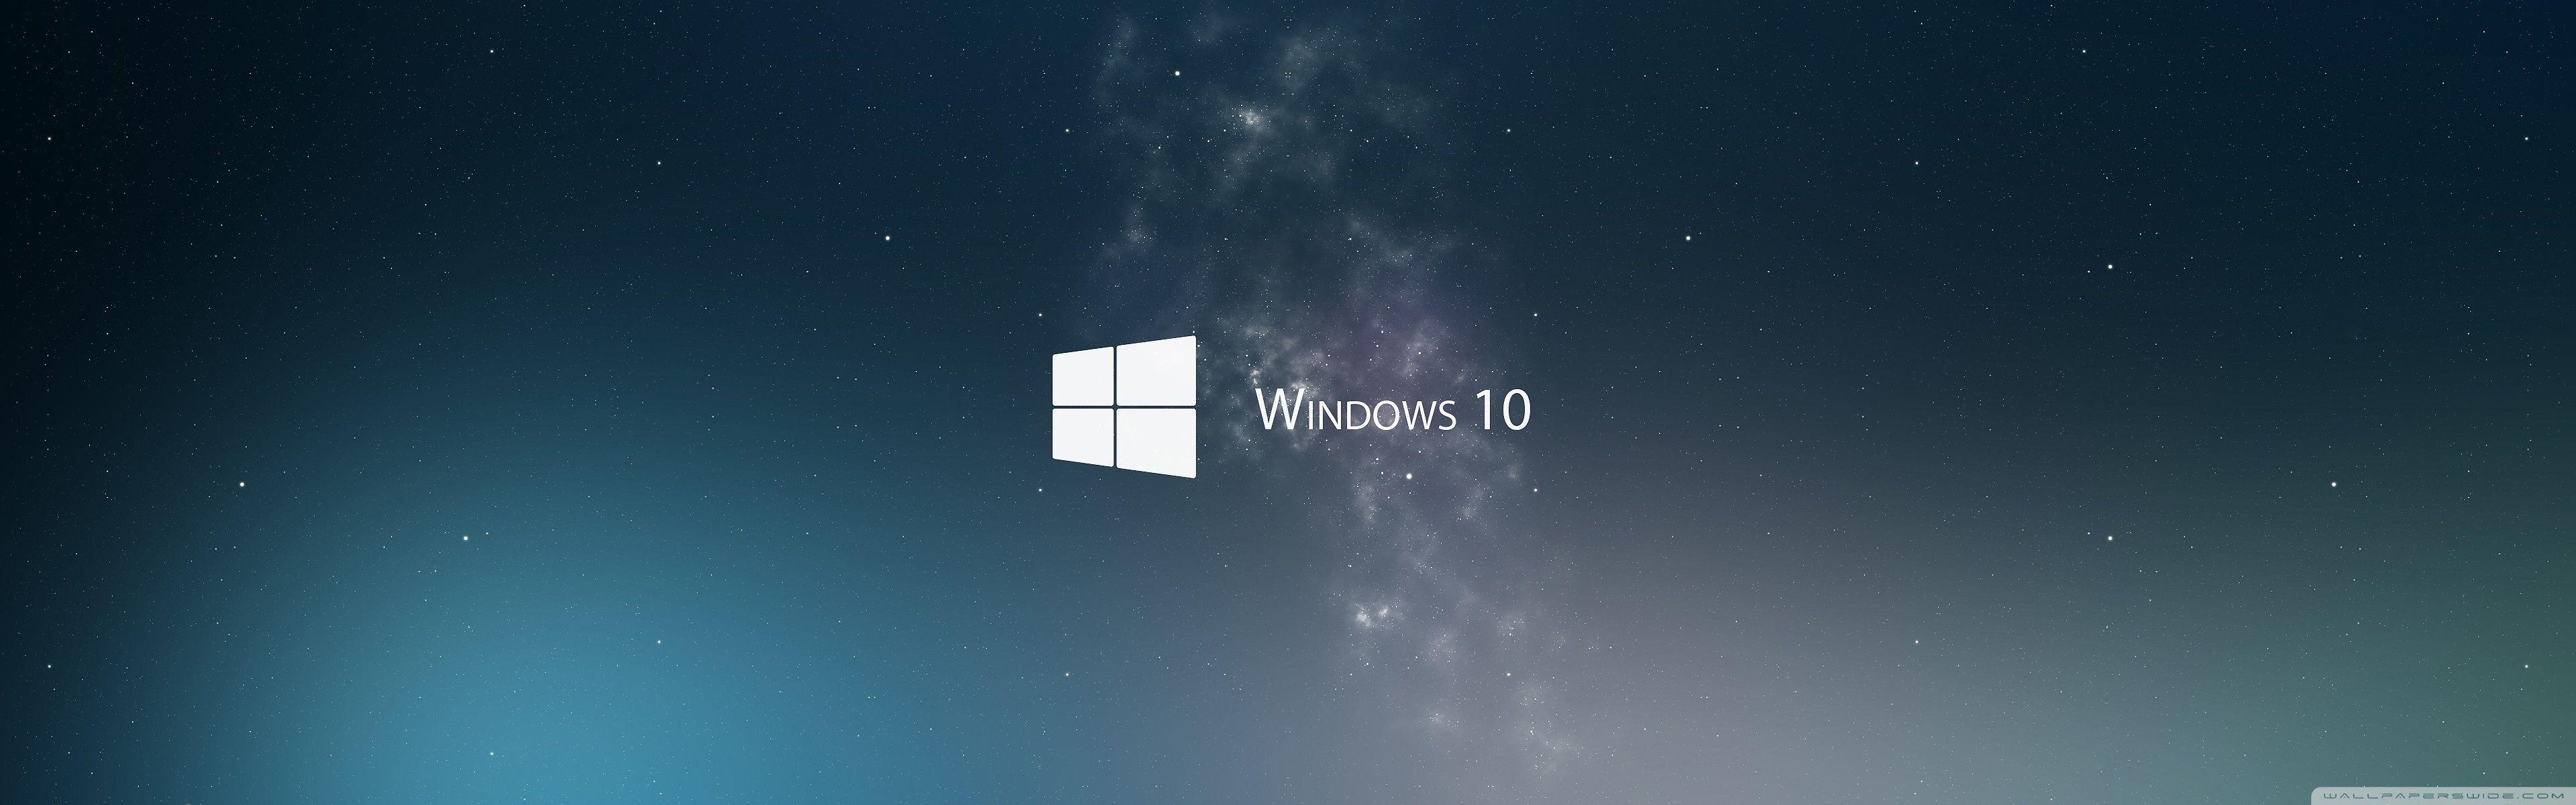 Hình nền kép màn hình Windows 10: Cùng chiêm ngưỡng những hình nền kép tuyệt đẹp cho màn hình Windows 10 của bạn và biến máy tính trở thành một tác phẩm nghệ thuật độc đáo.